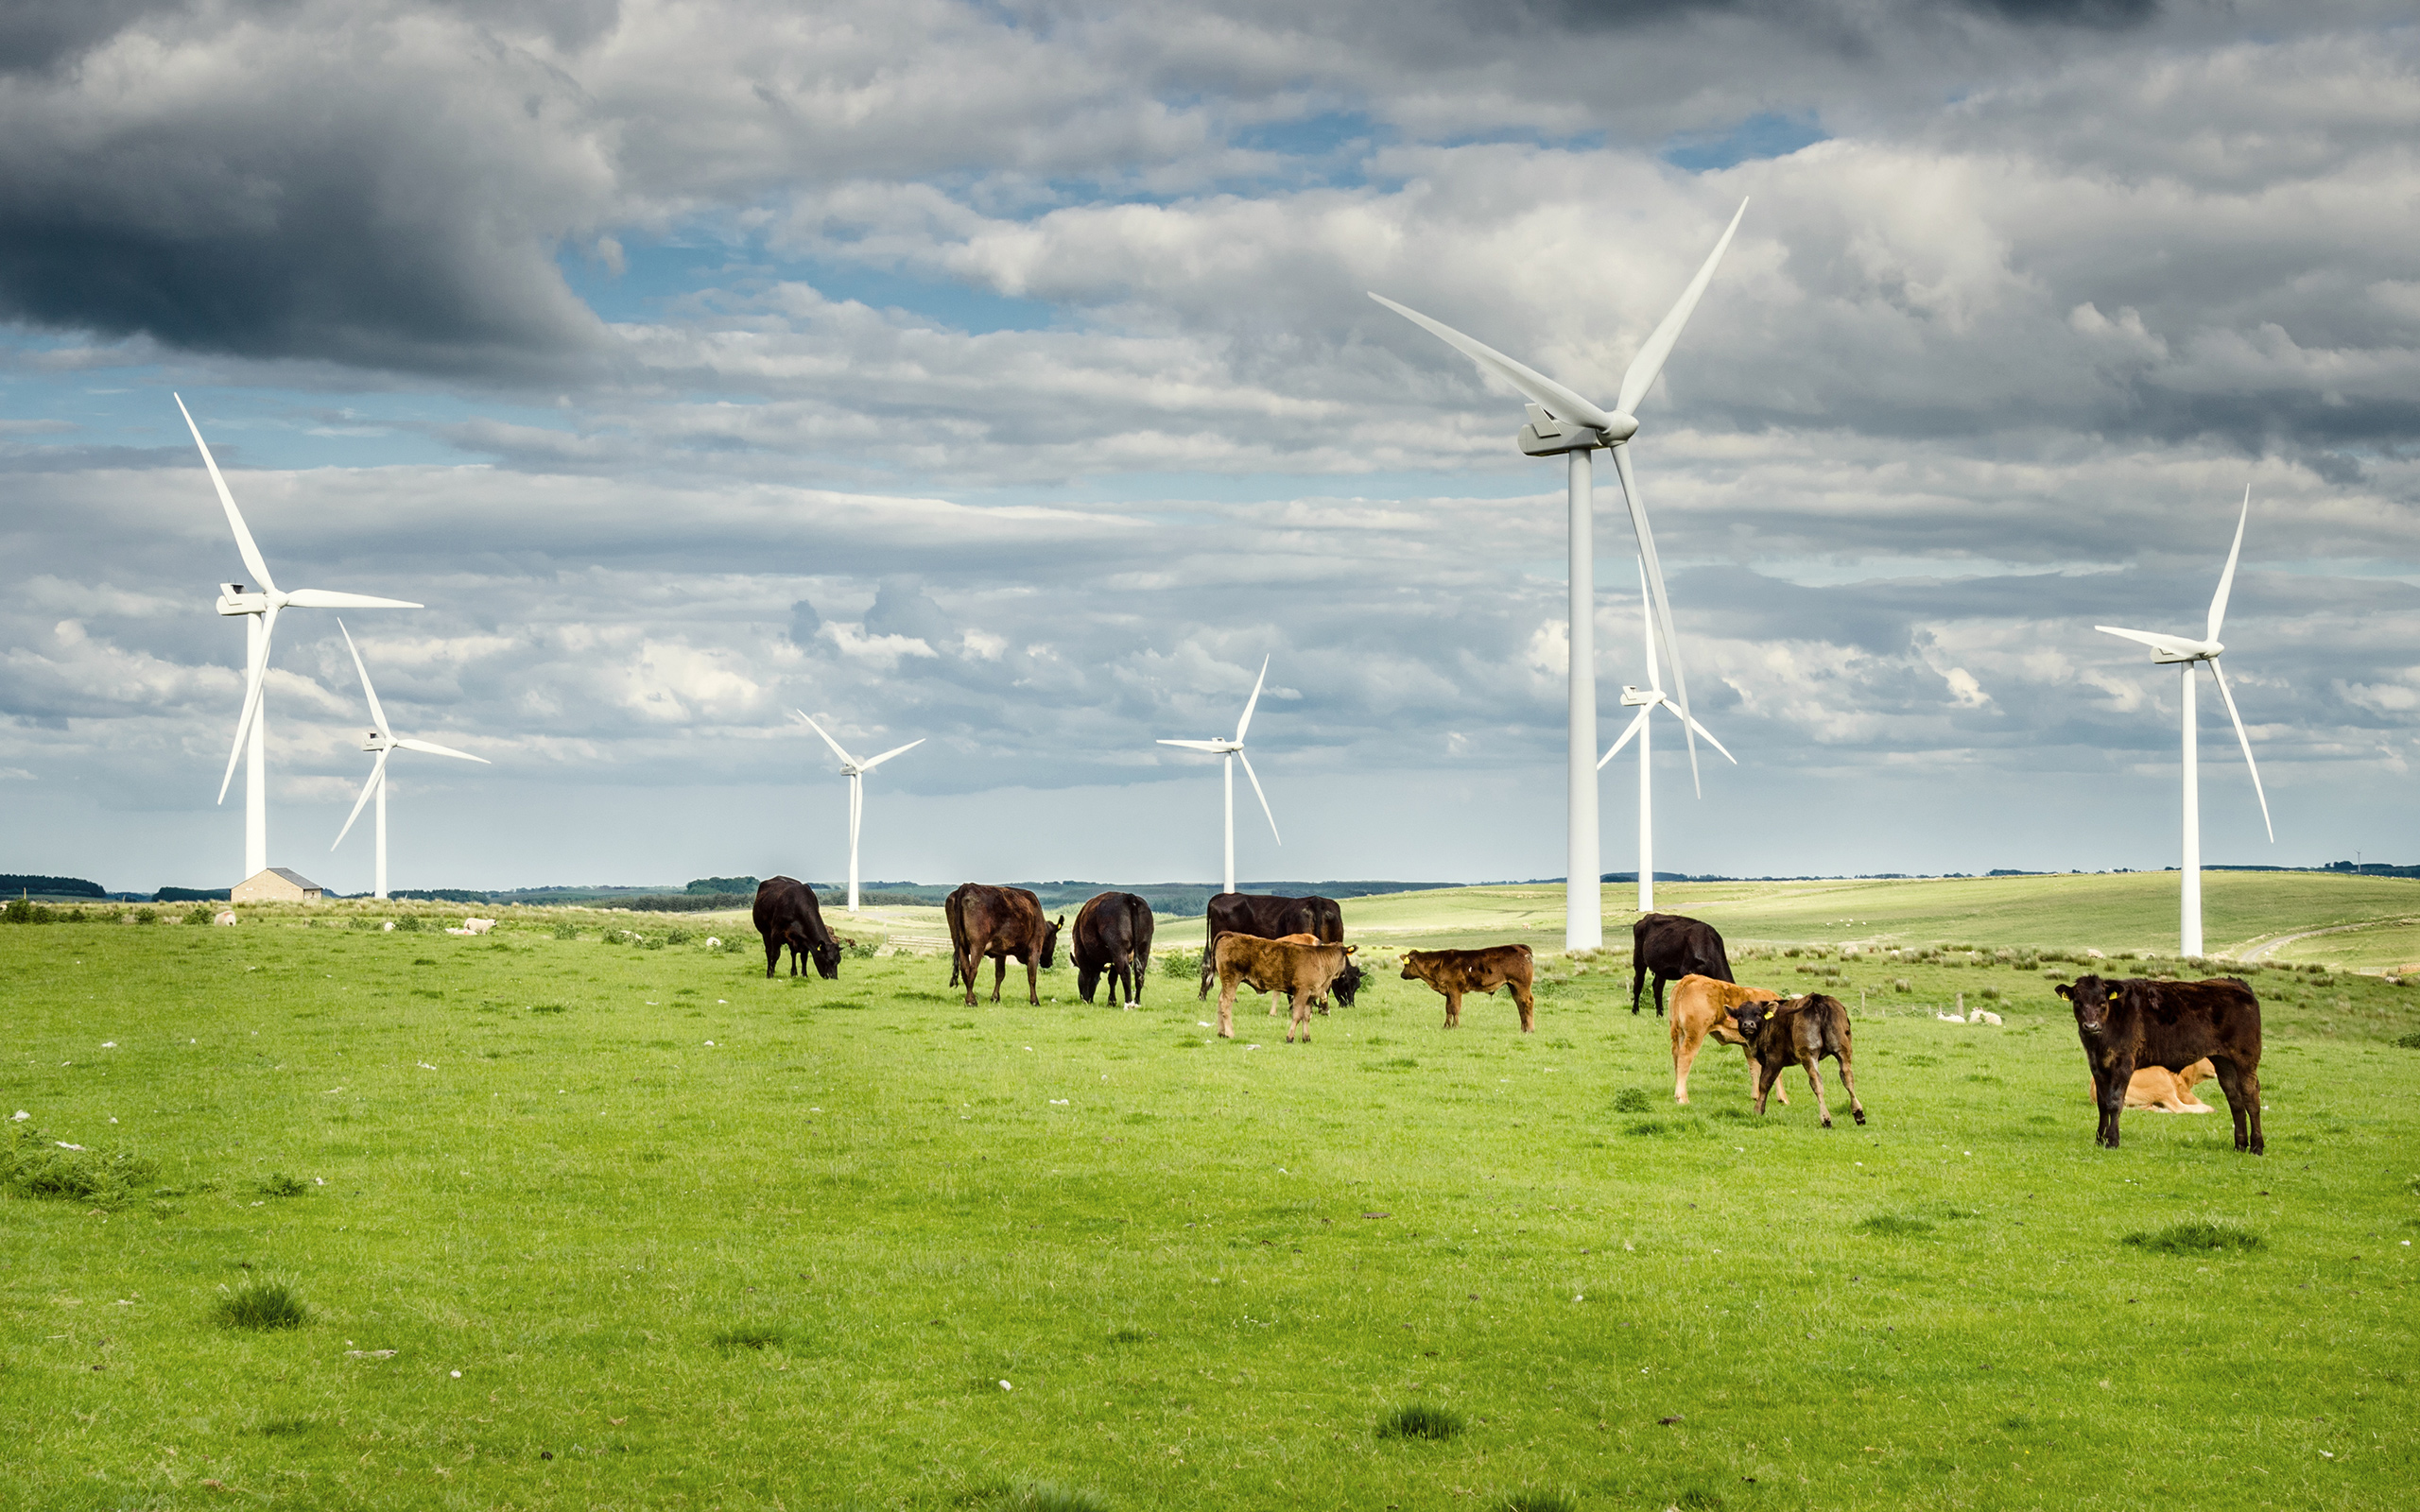 Cows graze near windmills